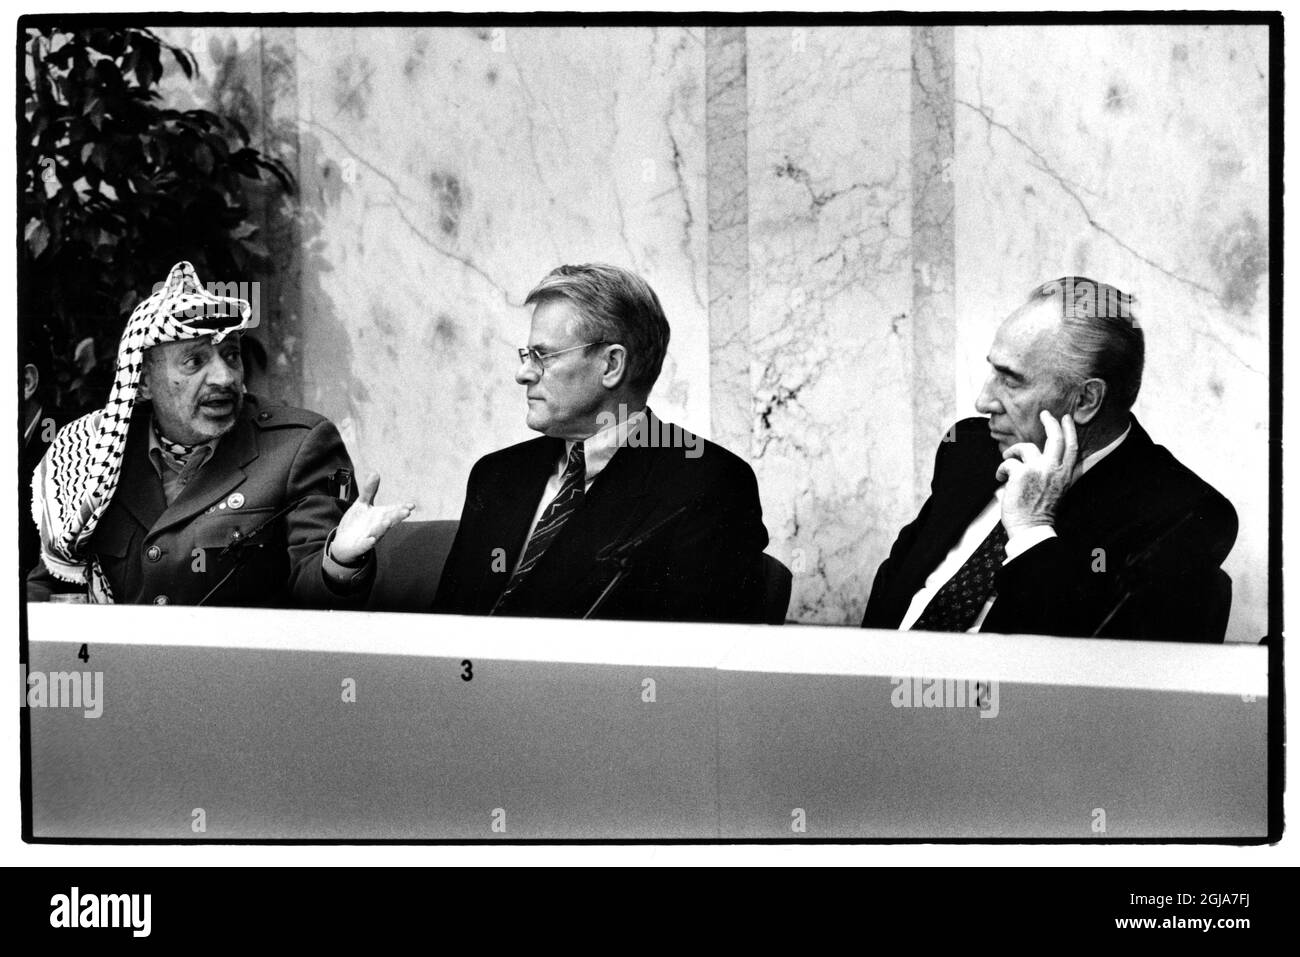 ARKIV 19941212 PLO:s ordforande Yassir Arafat och Israels utrikesminister Shimon Peres haller en gemensam presskonferens pa Rosenbad i Stockholm, december 1994. Dagarna efter att Arafat och Peres tagit emot Nobels Fredspris med Yitzhak Rabin i Oslo, Norge. Foto: Bo Dahlin / SCANPIX / Kod: 11176  Stock Photo